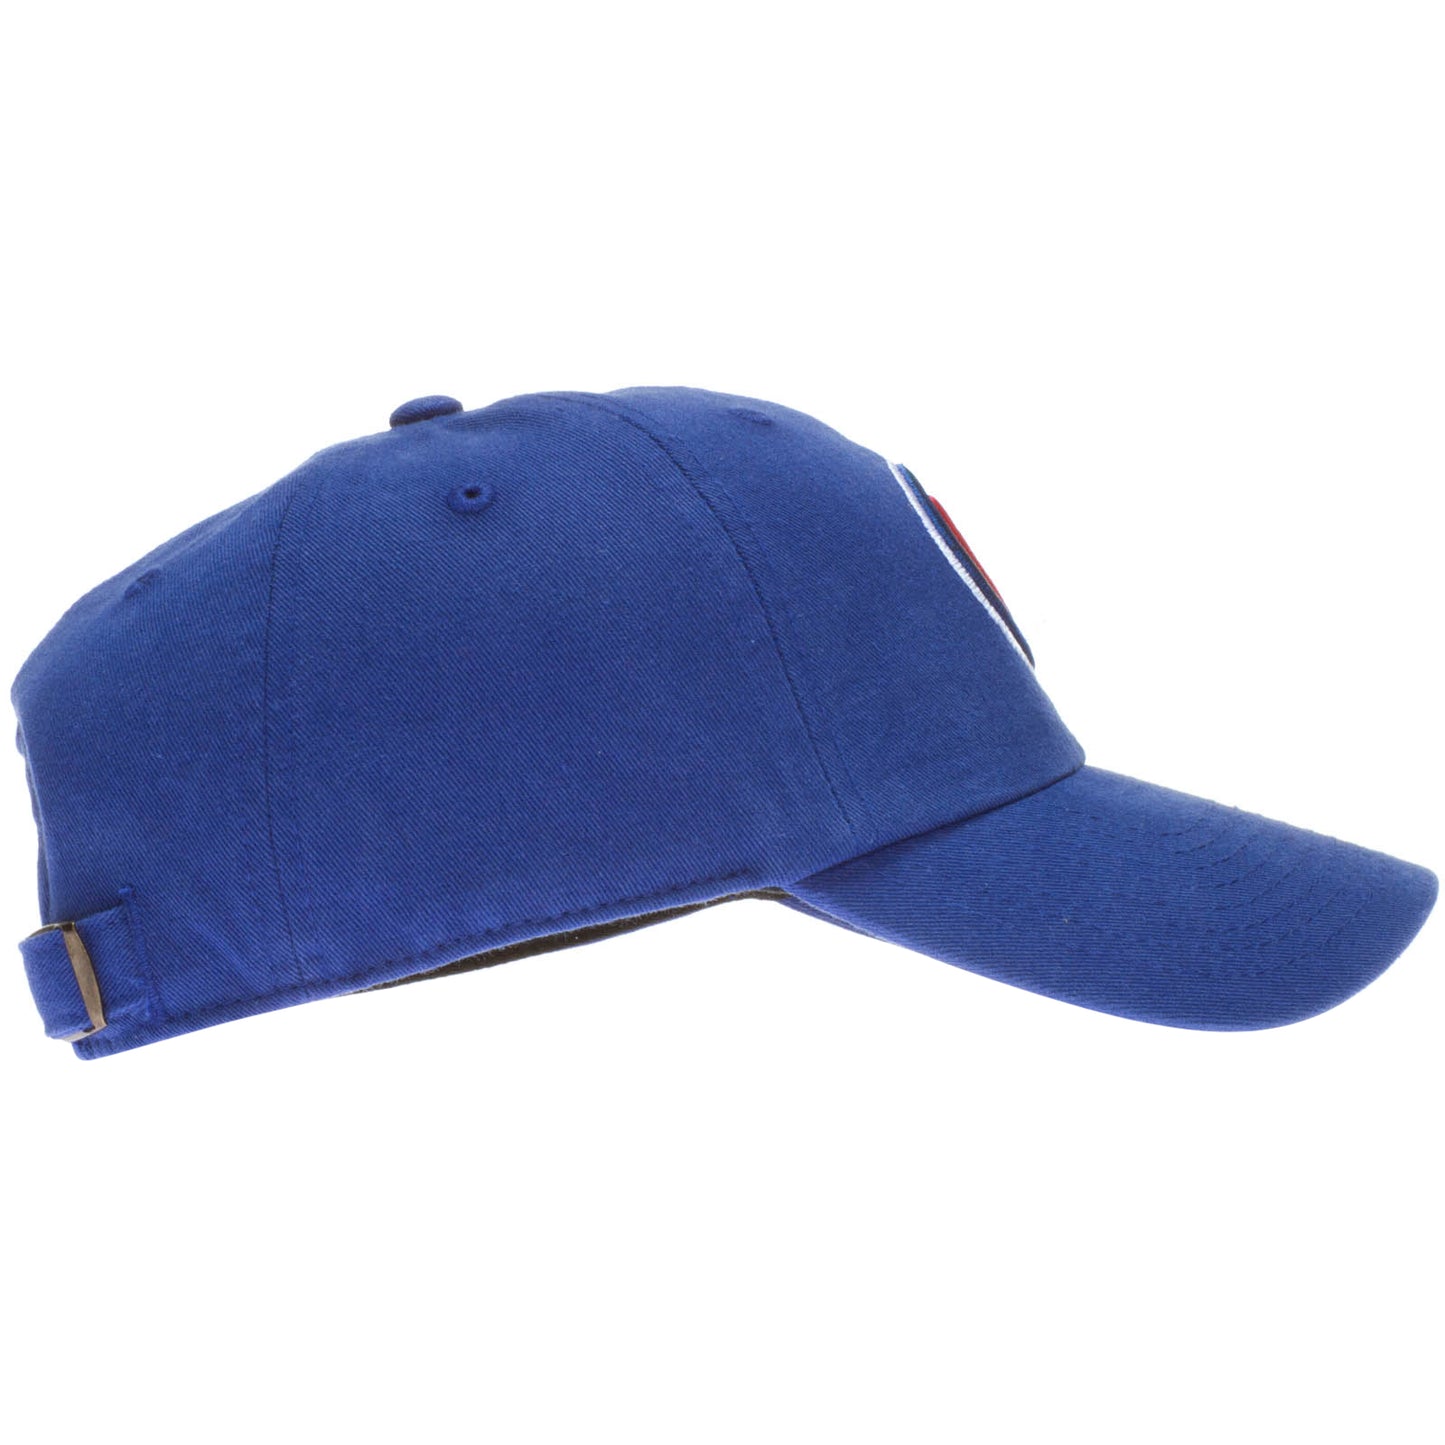 Chicago Cubs Logo Royal 47' Clean Up Adjustable Hat